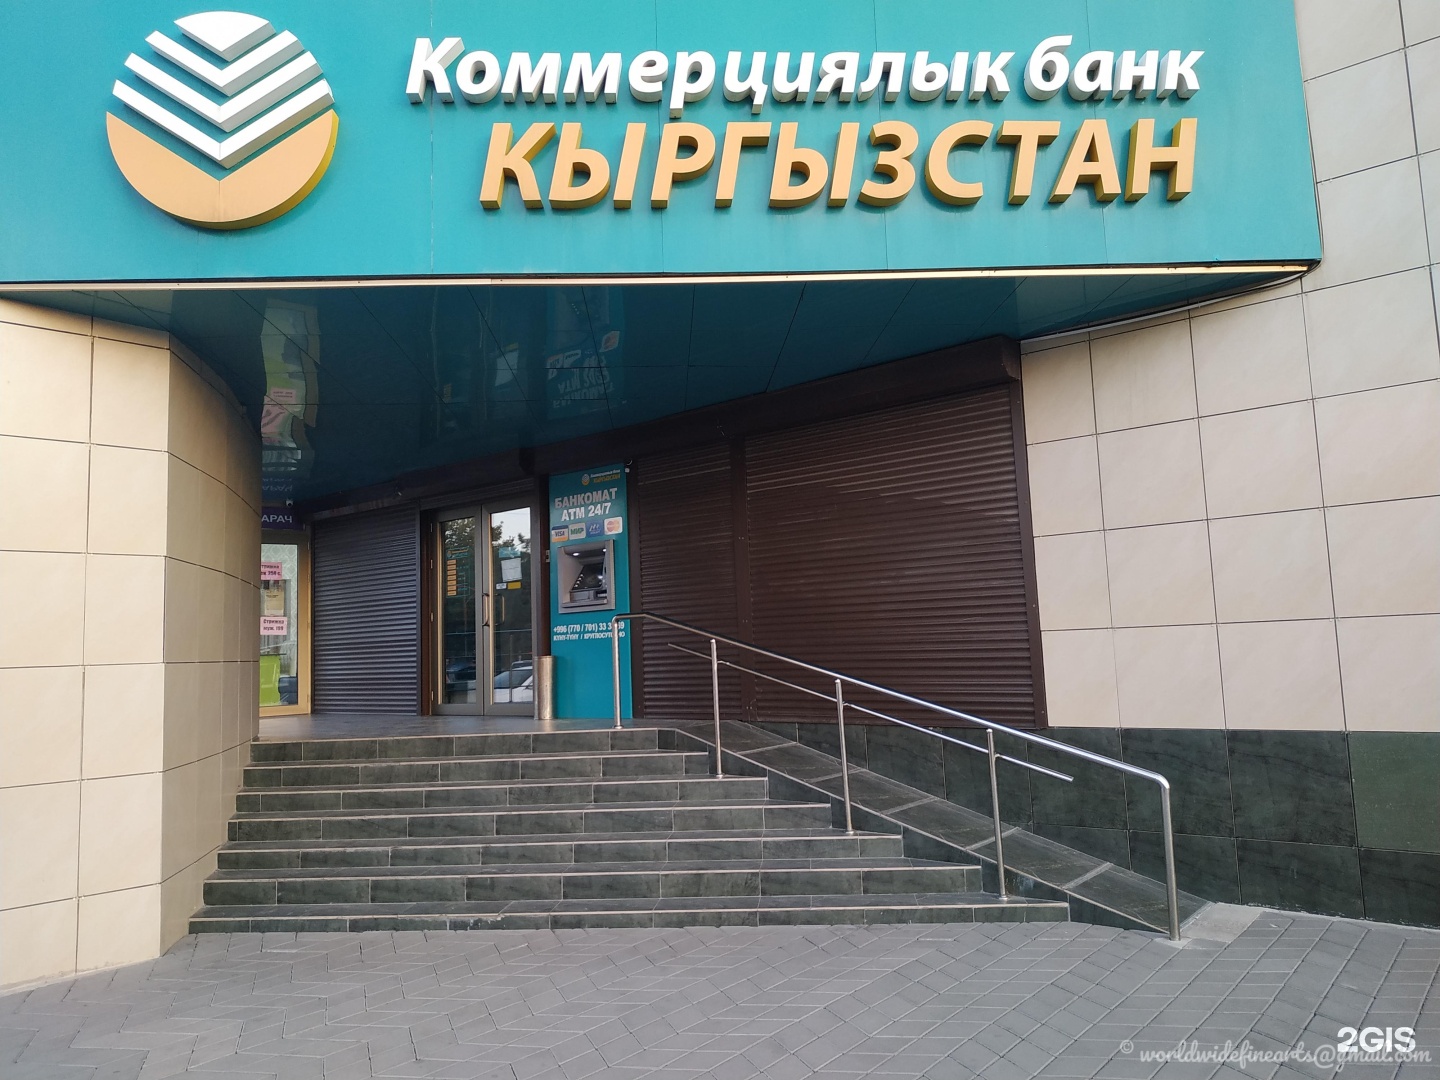 М банк сайт. Банк Кыргызстан. Коммерциялык банк. Кыргыз коммерческий банк. Коммерческий банк Кыргызстан MBANK.